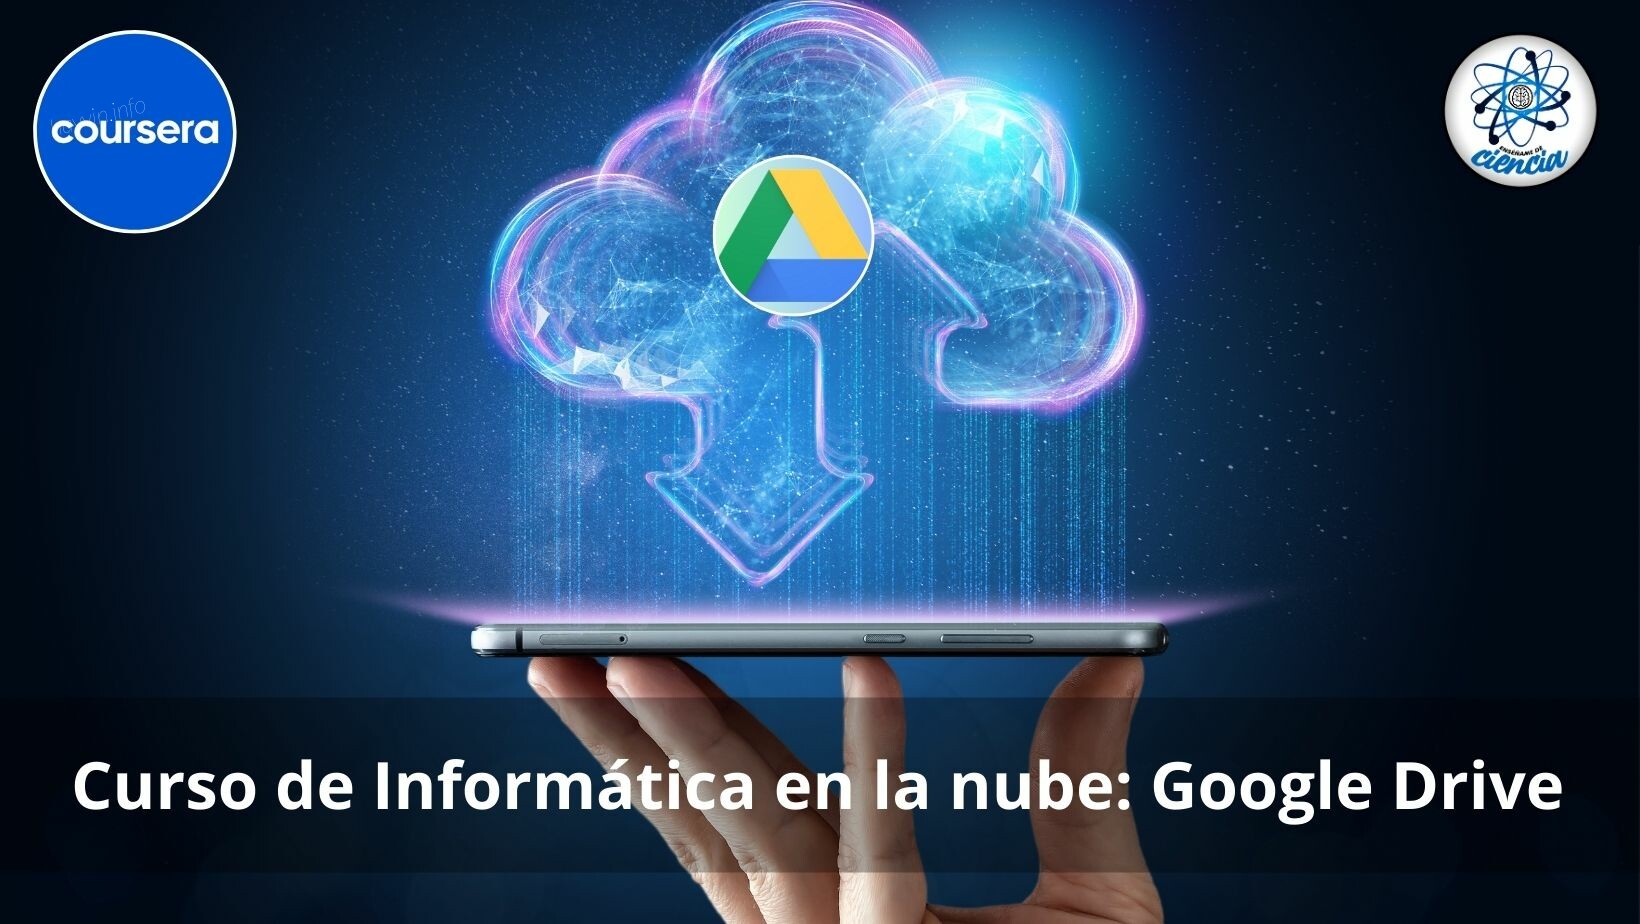 INGYENES Cloud Computing tanfolyam: Google Drive, hozza ki a legtöbbet ebből az eszközből